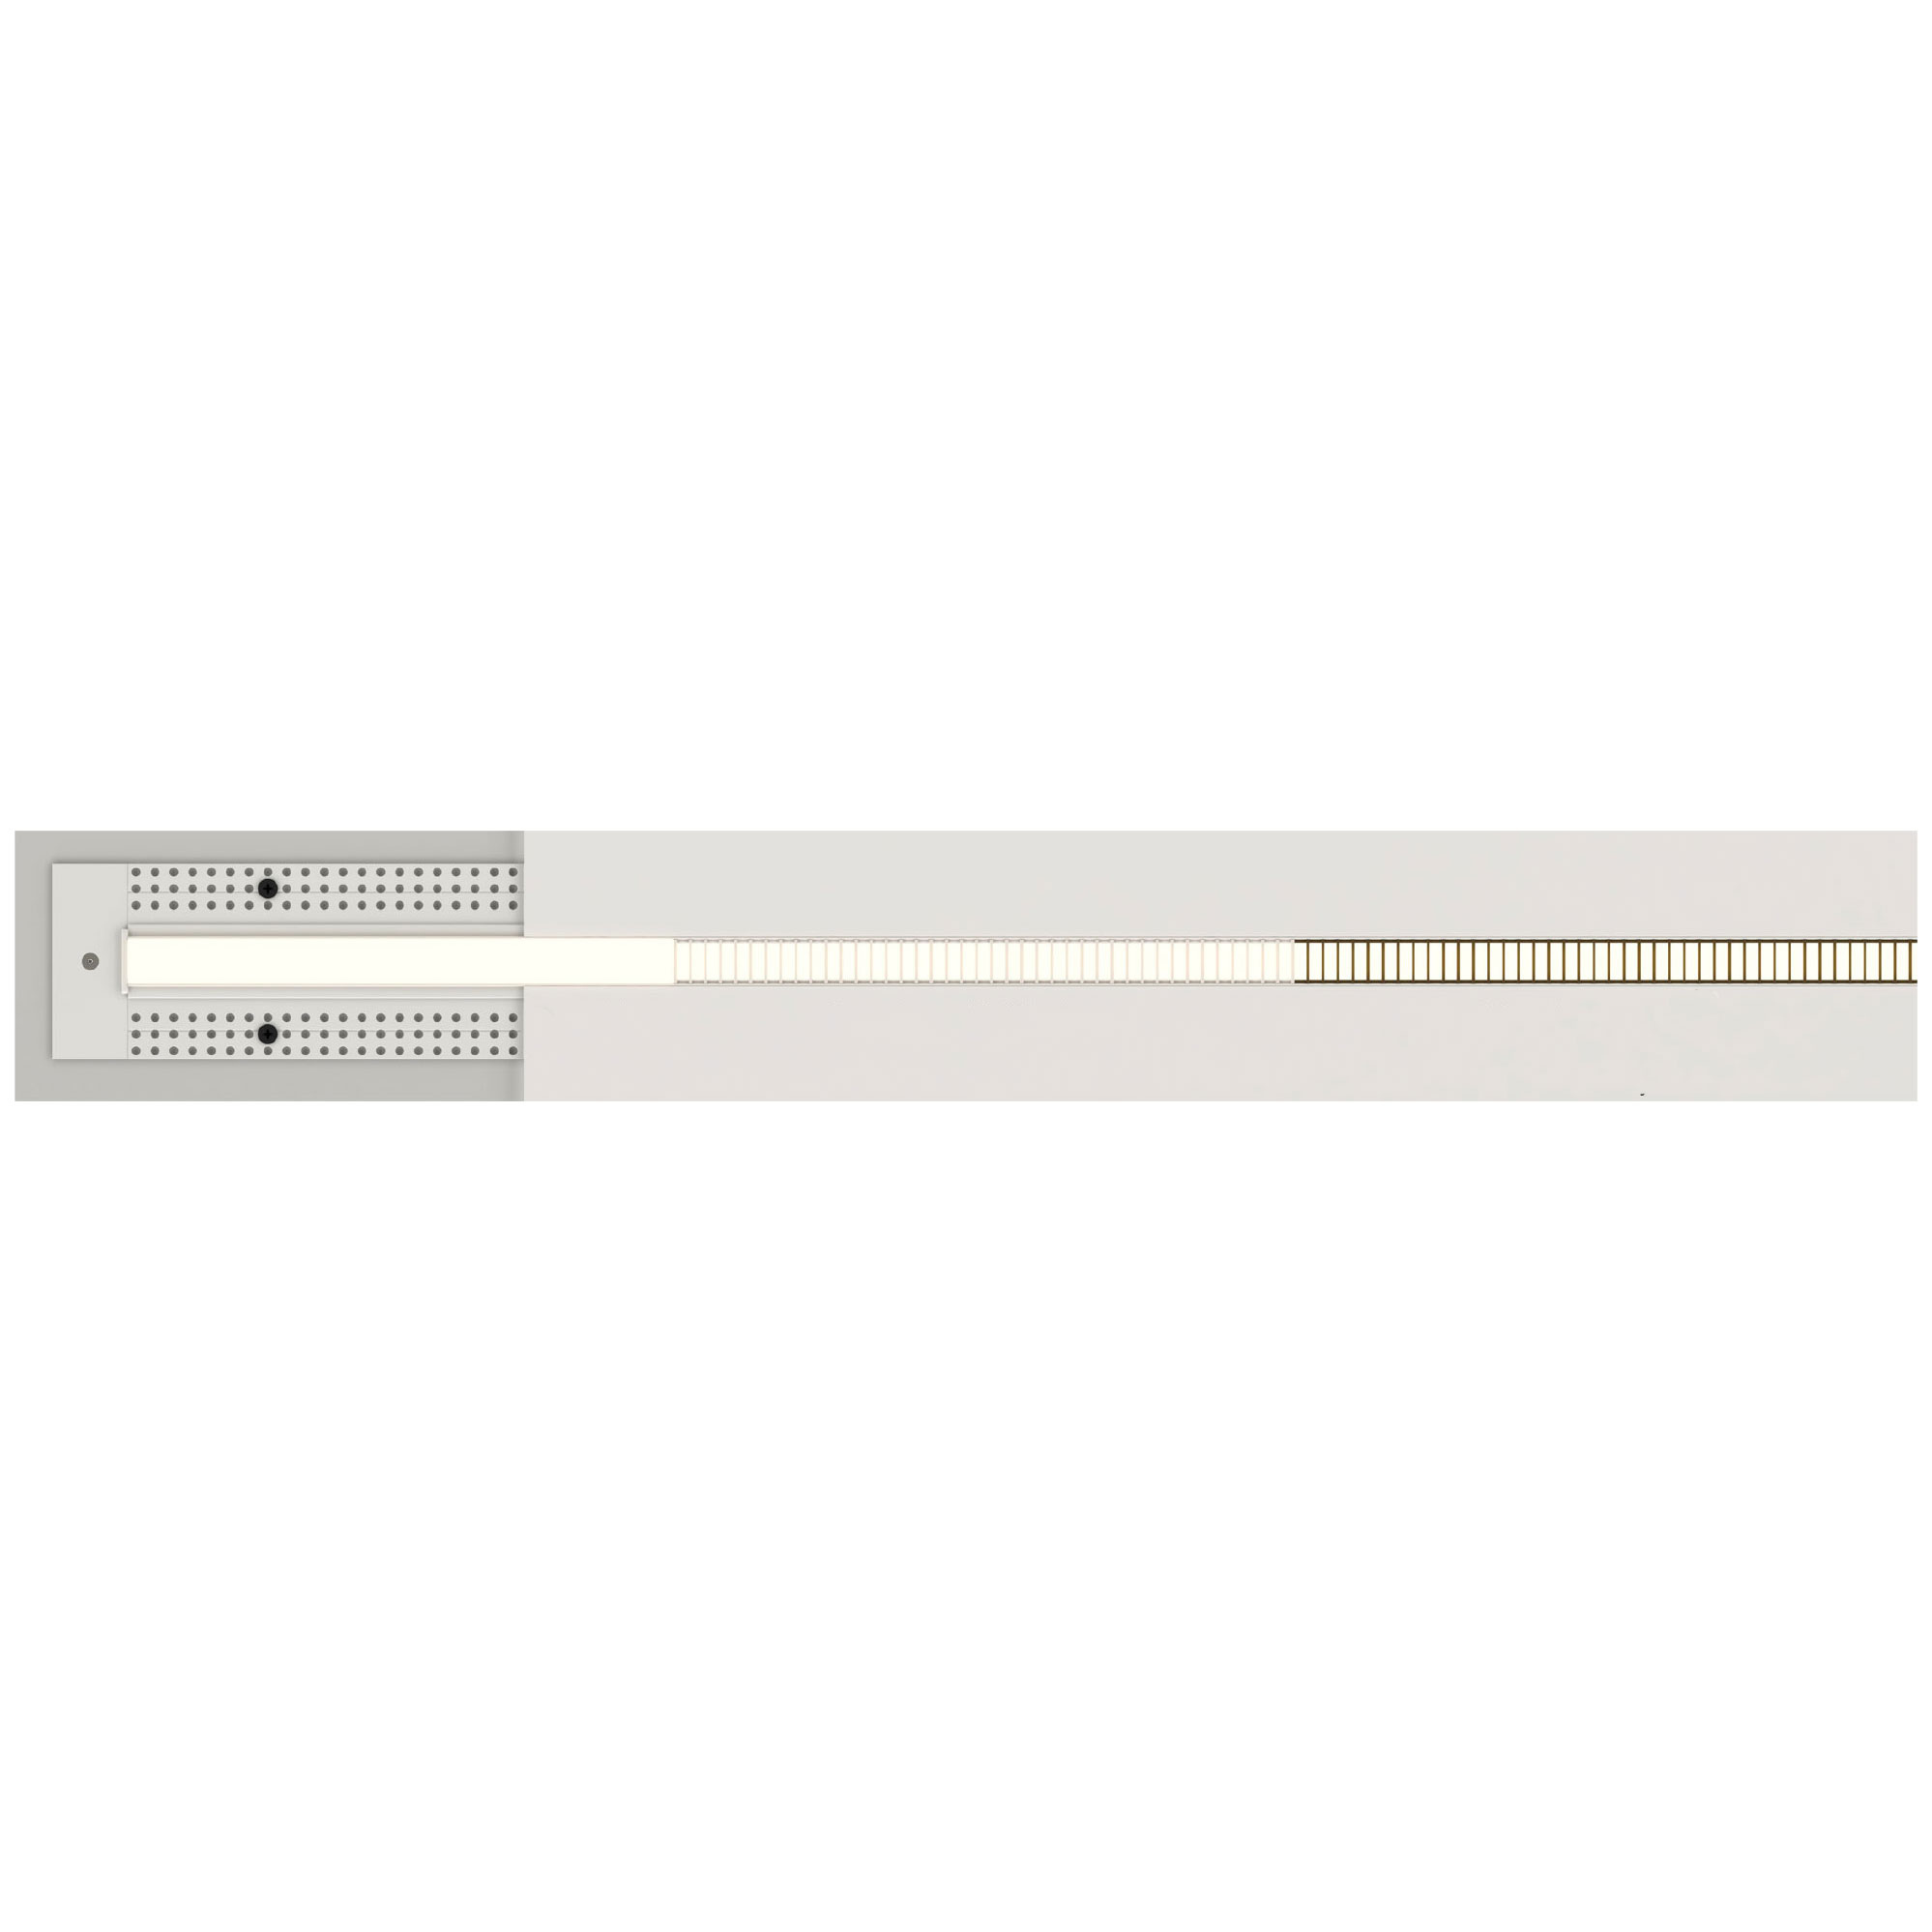 Orphan National folketælling mørke TruLine .5A 5W 24V Tunable White 2K6K Plaster-In LED System by PureEdge  Lighting | TL.5A-5WDC-8FT-ST2K6K | EDG1201013